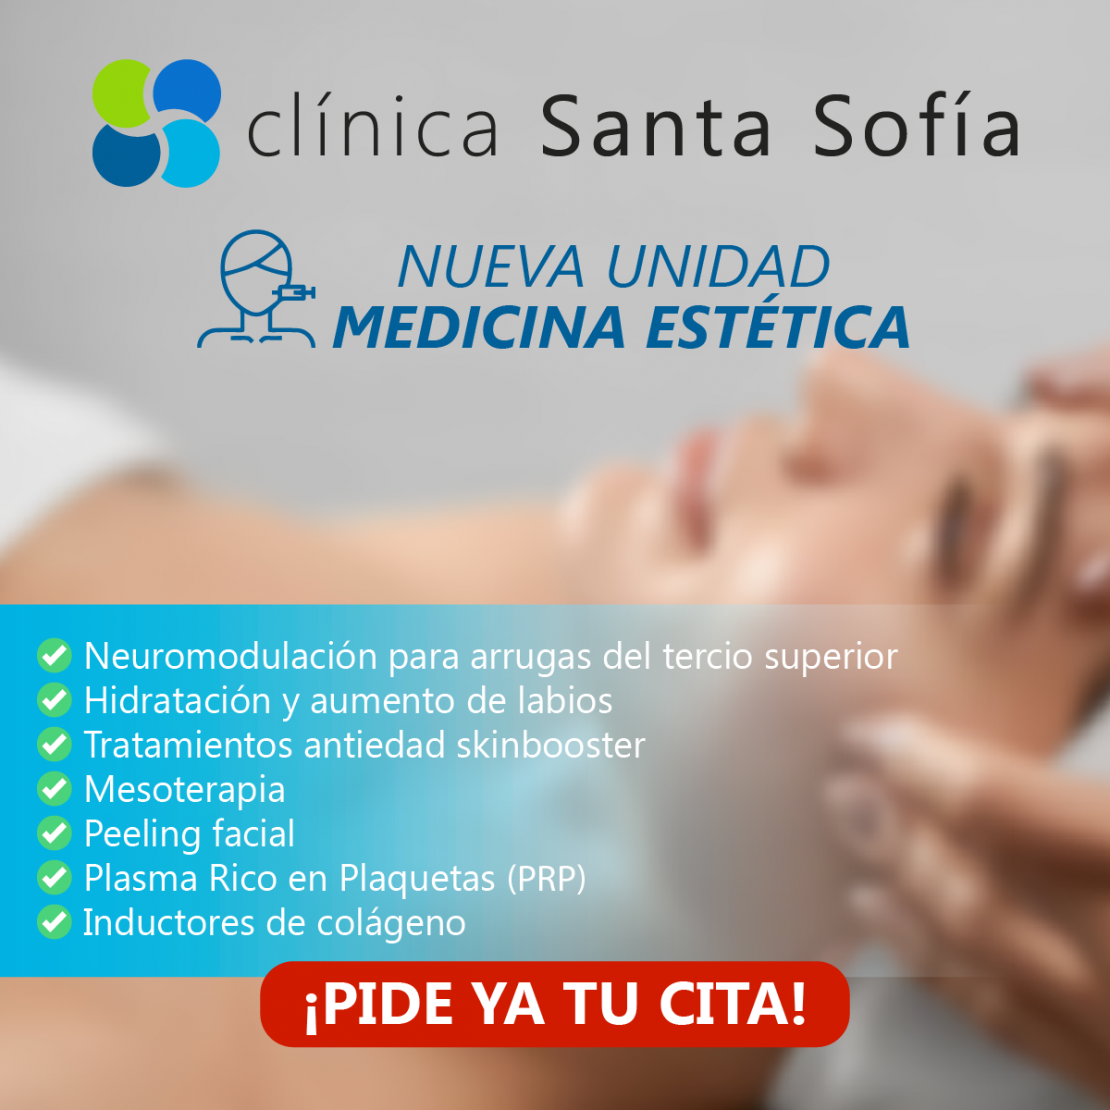 Clínica Santa Sofía abre una unidad de Medicina Estética